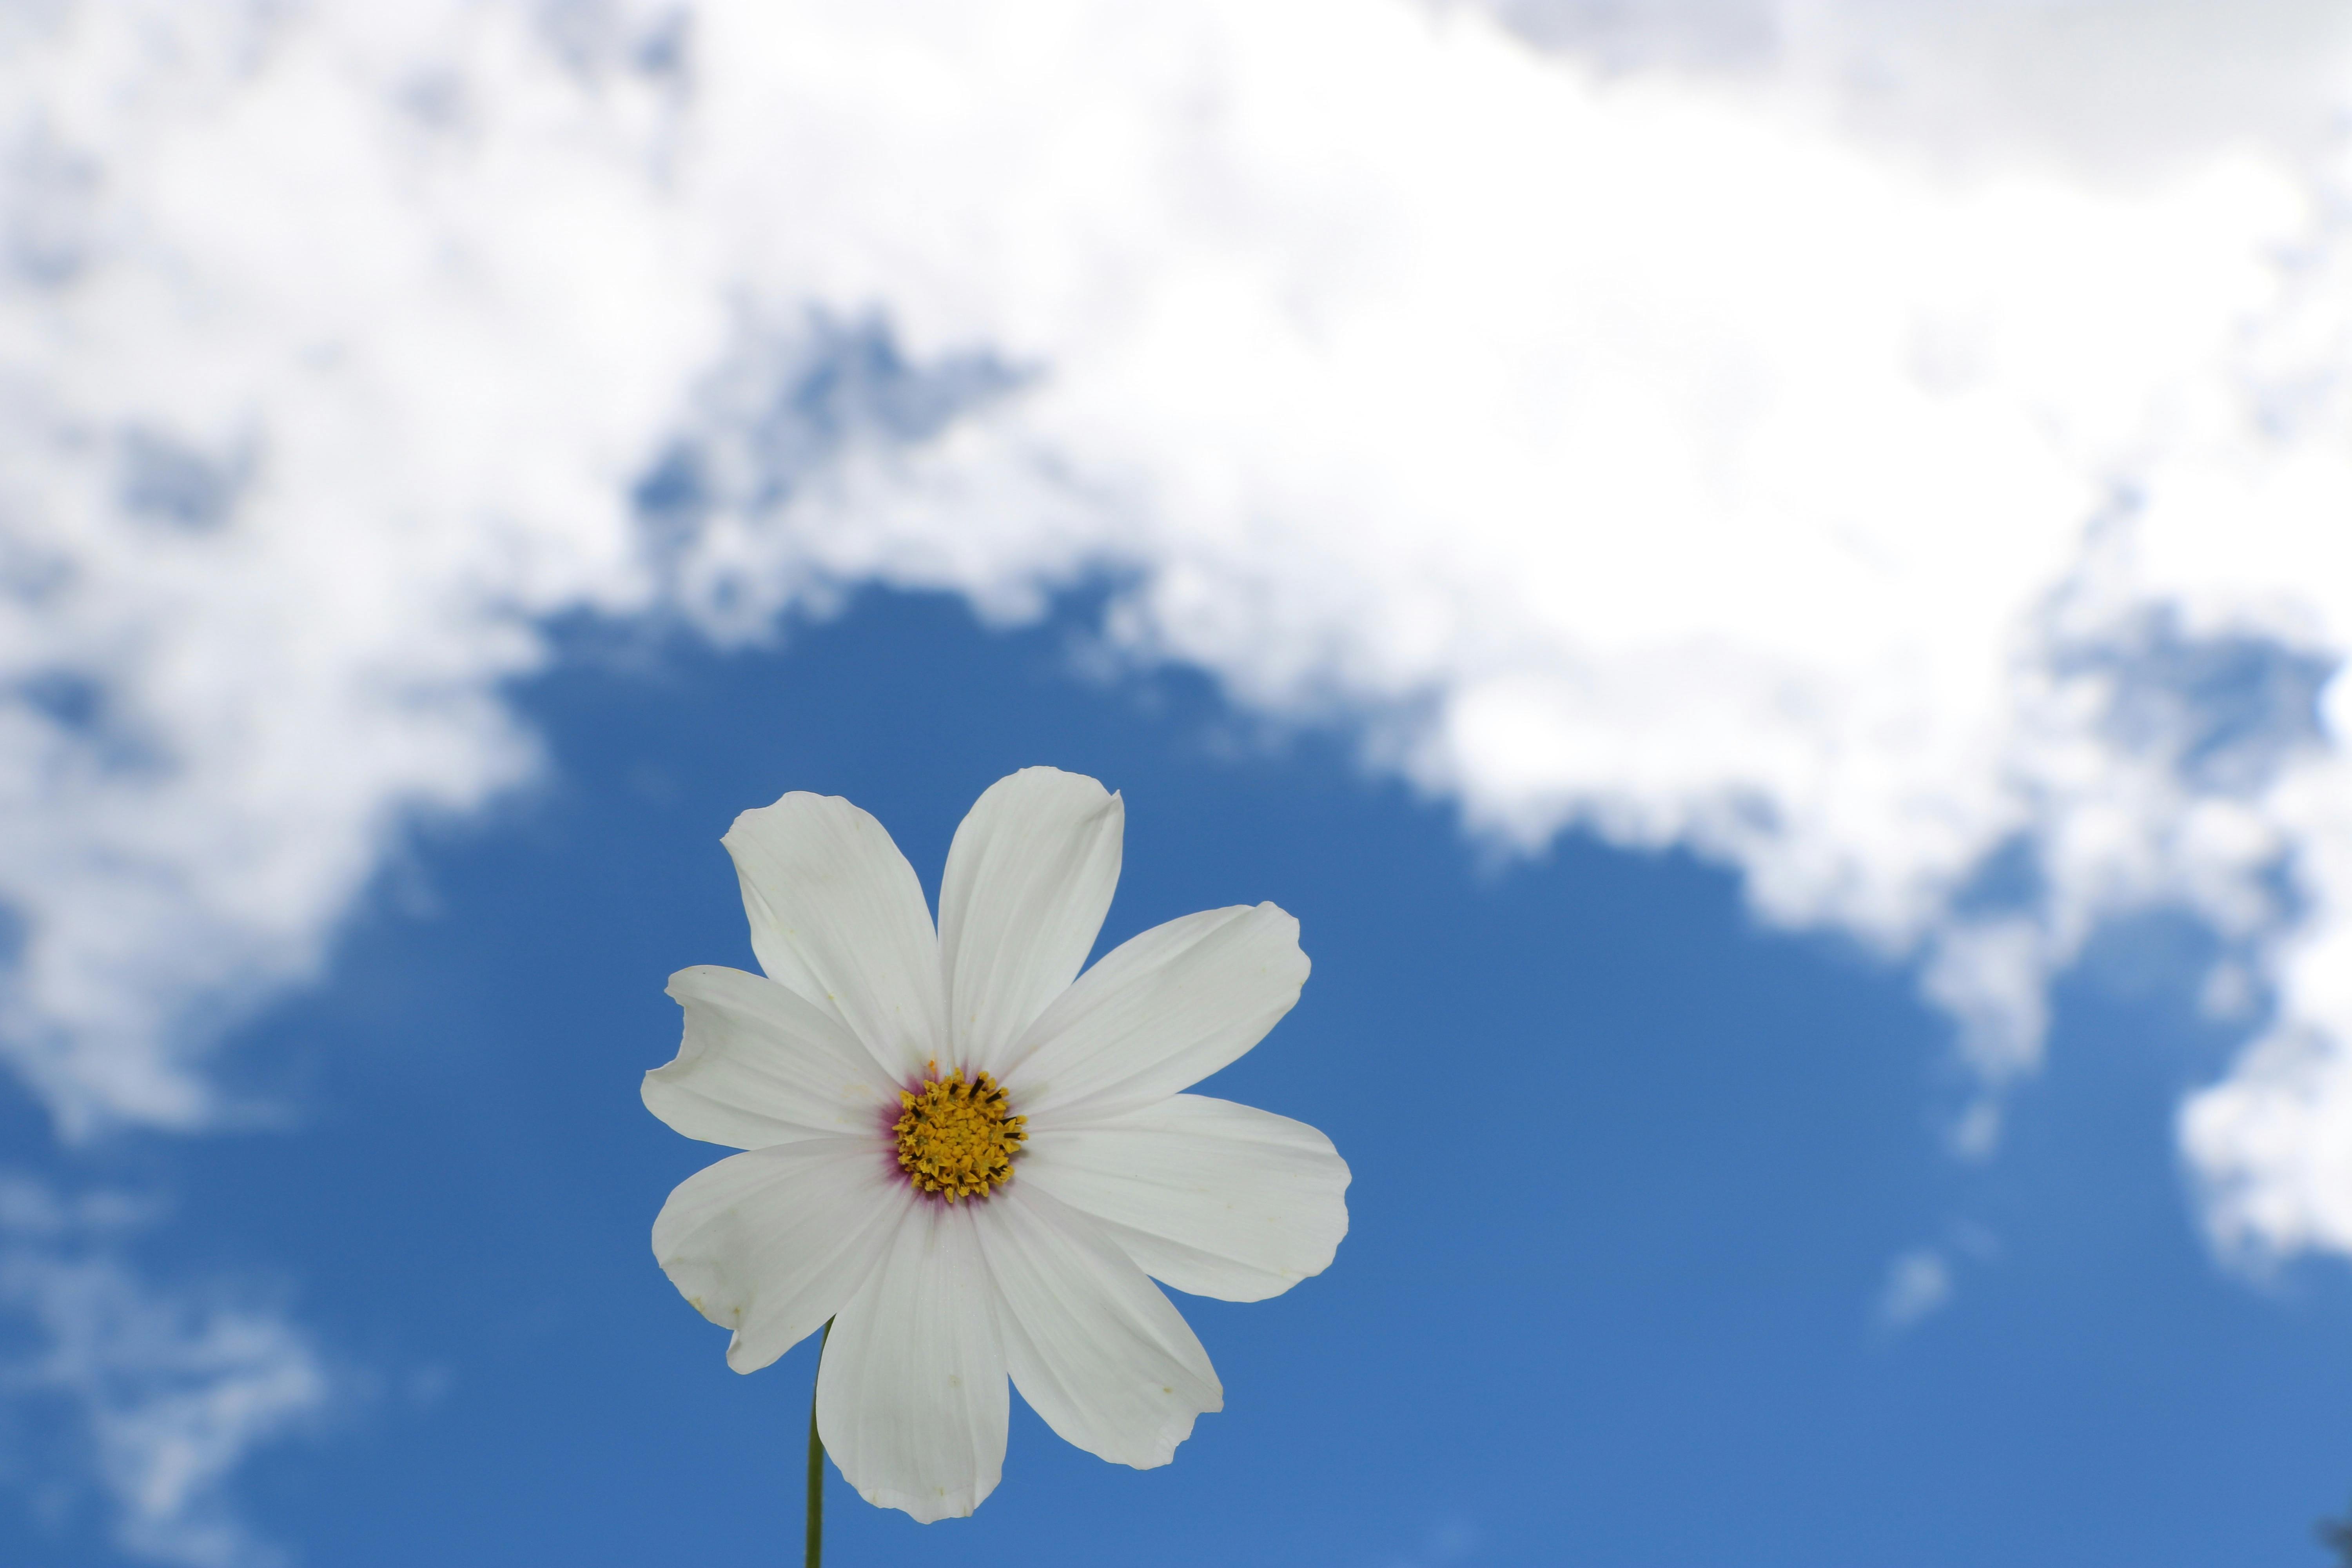 Chào mừng đến với vũ trụ hoa trắng. Với những màu sắc đơn giản nhưng cực kì tinh tế, những bông hoa này sẽ làm cho trái tim bạn xao động. Hãy dành chút thời gian để chiêm ngưỡng vẻ đẹp của vũ trụ hoa này.